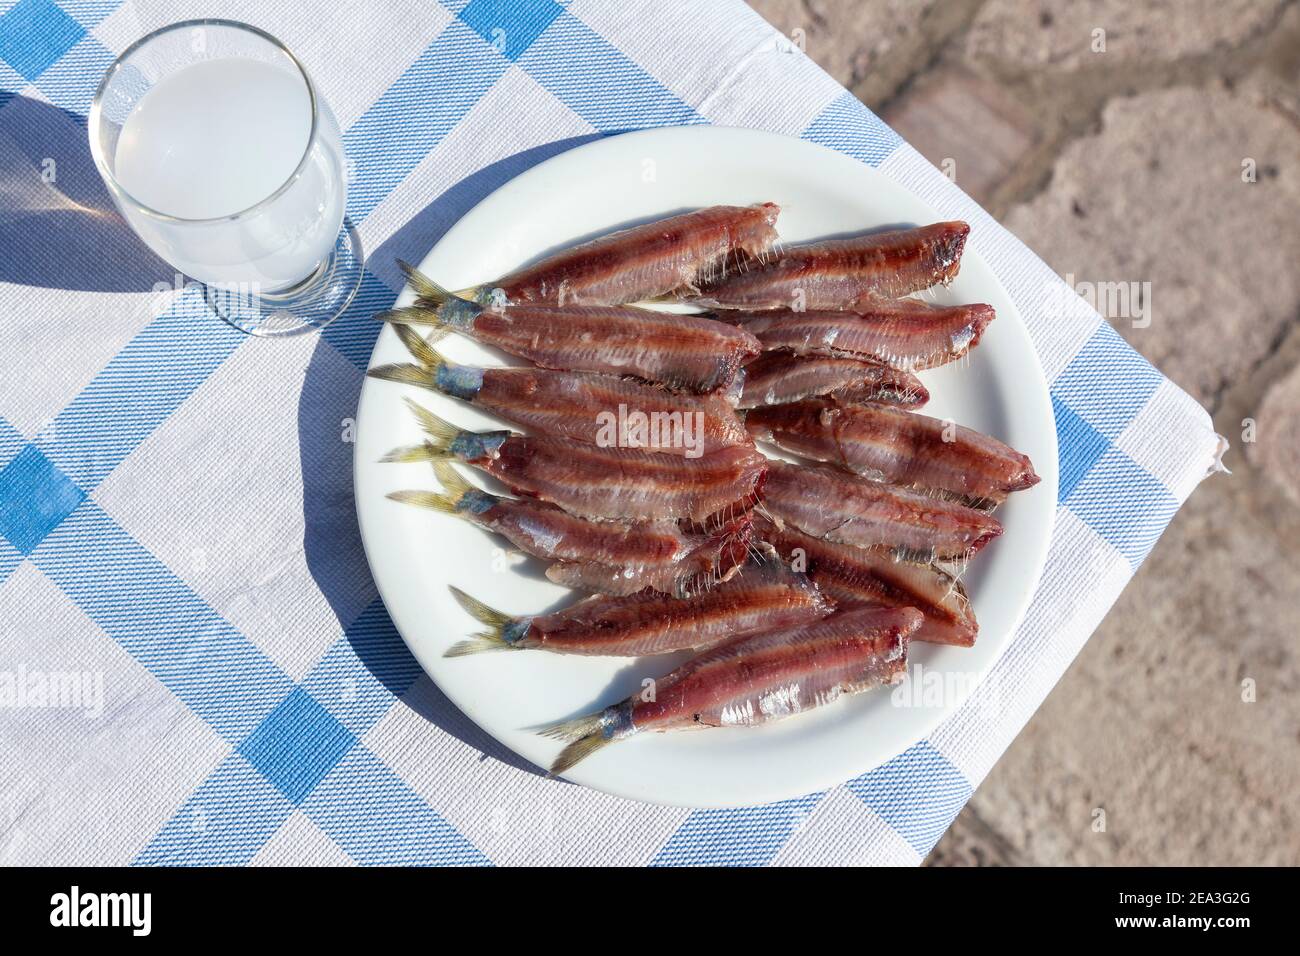 Gesalzene Sardinen, eine beliebte Fischfeinheit von Kalloni, Insel Lesvos, Griechenland, die jetzt als Produkt der geschützten Ursprungsbezeichnung anerkannt ist Stockfoto